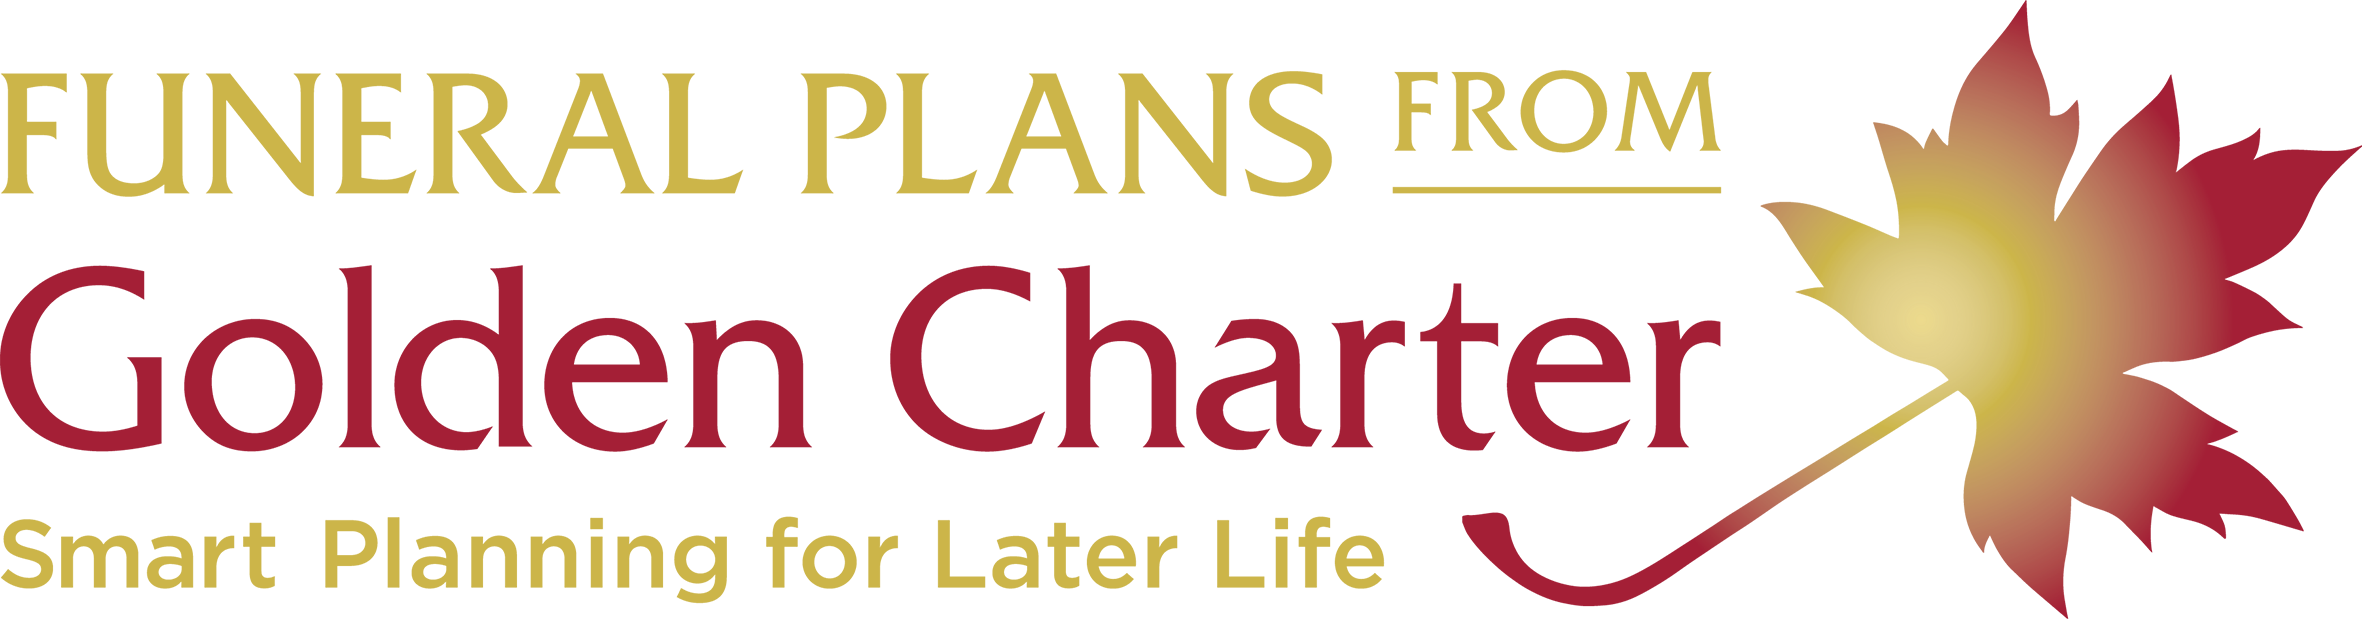 Golden Charter Funeral Plan